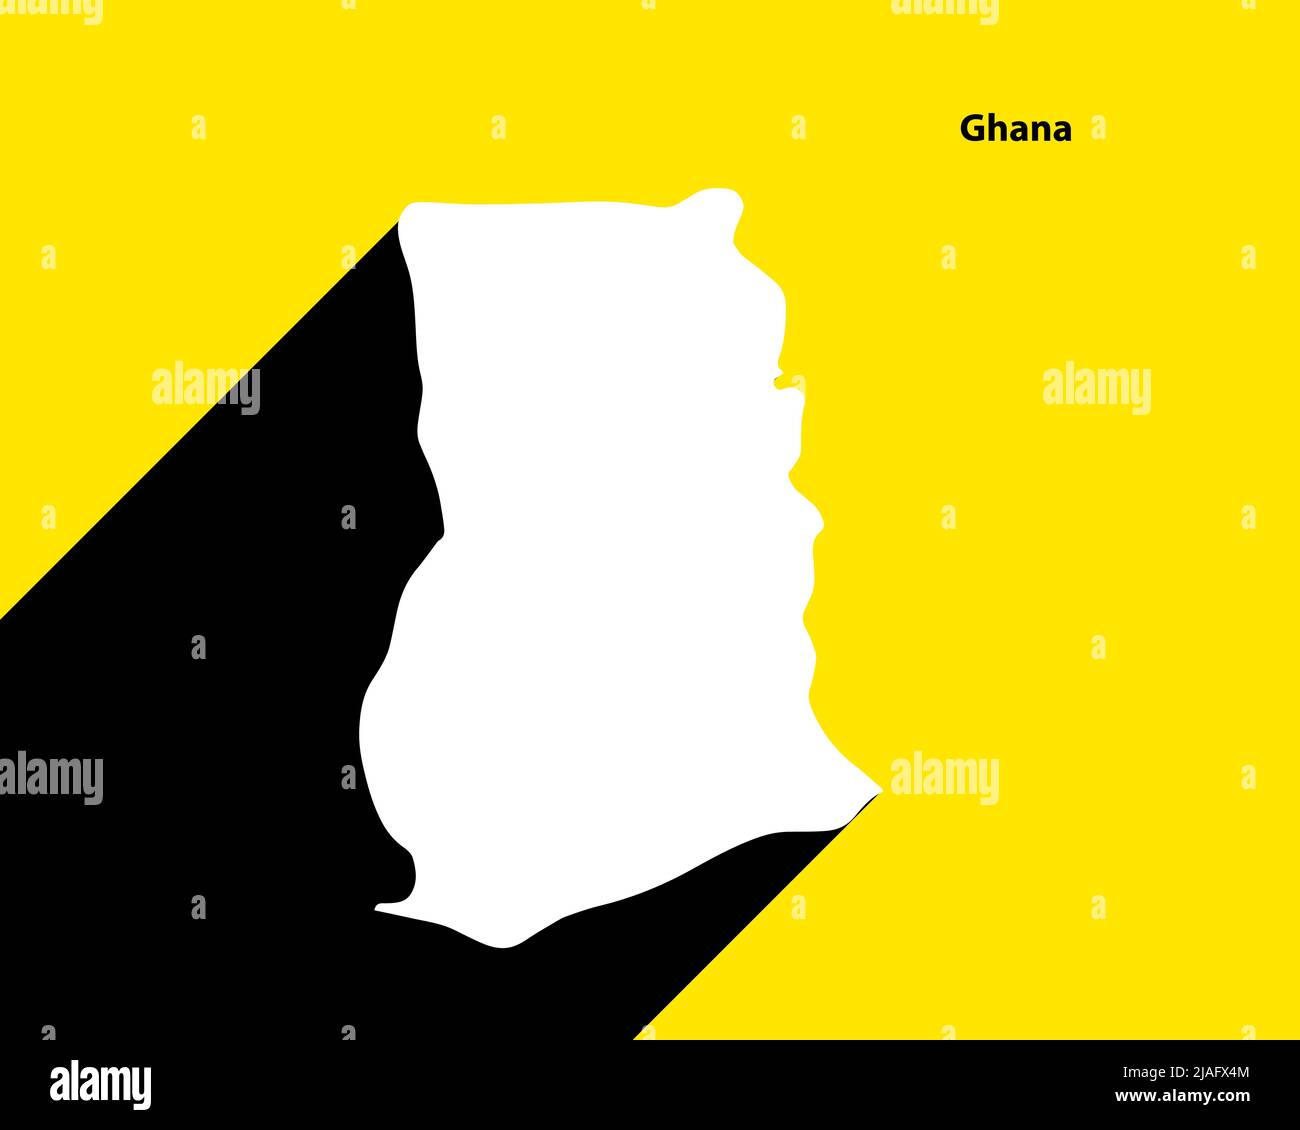 Ghana carte sur une affiche rétro avec une ombre longue. Signe vintage facile à éditer, manipuler, redimensionner ou coloriser. Illustration de Vecteur